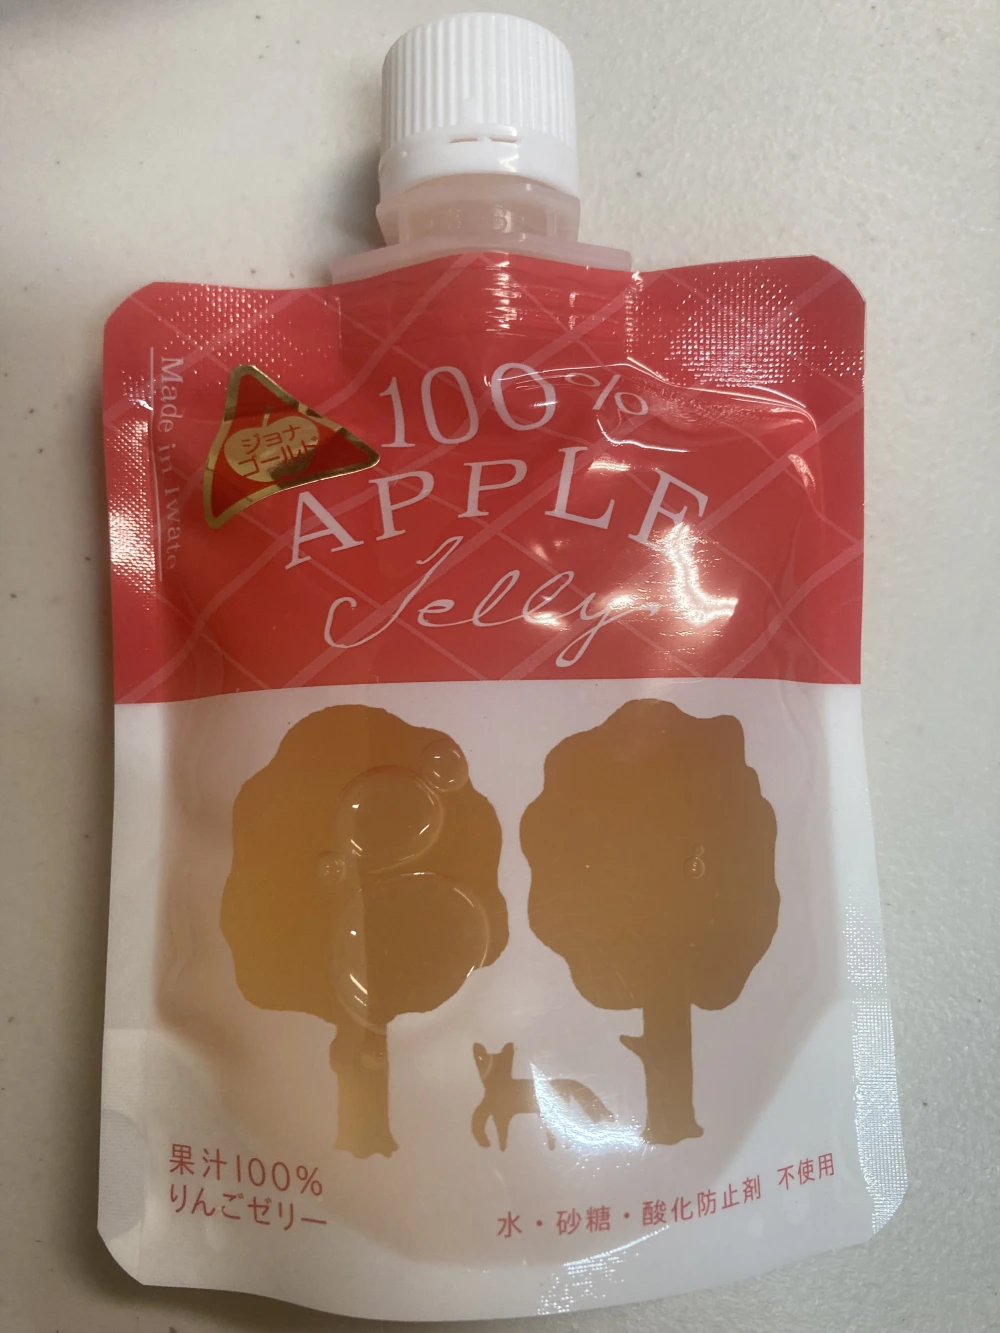 【水、砂糖、酸化防止剤不使用の果汁100%りんごジュース】と【りんごゼリー】